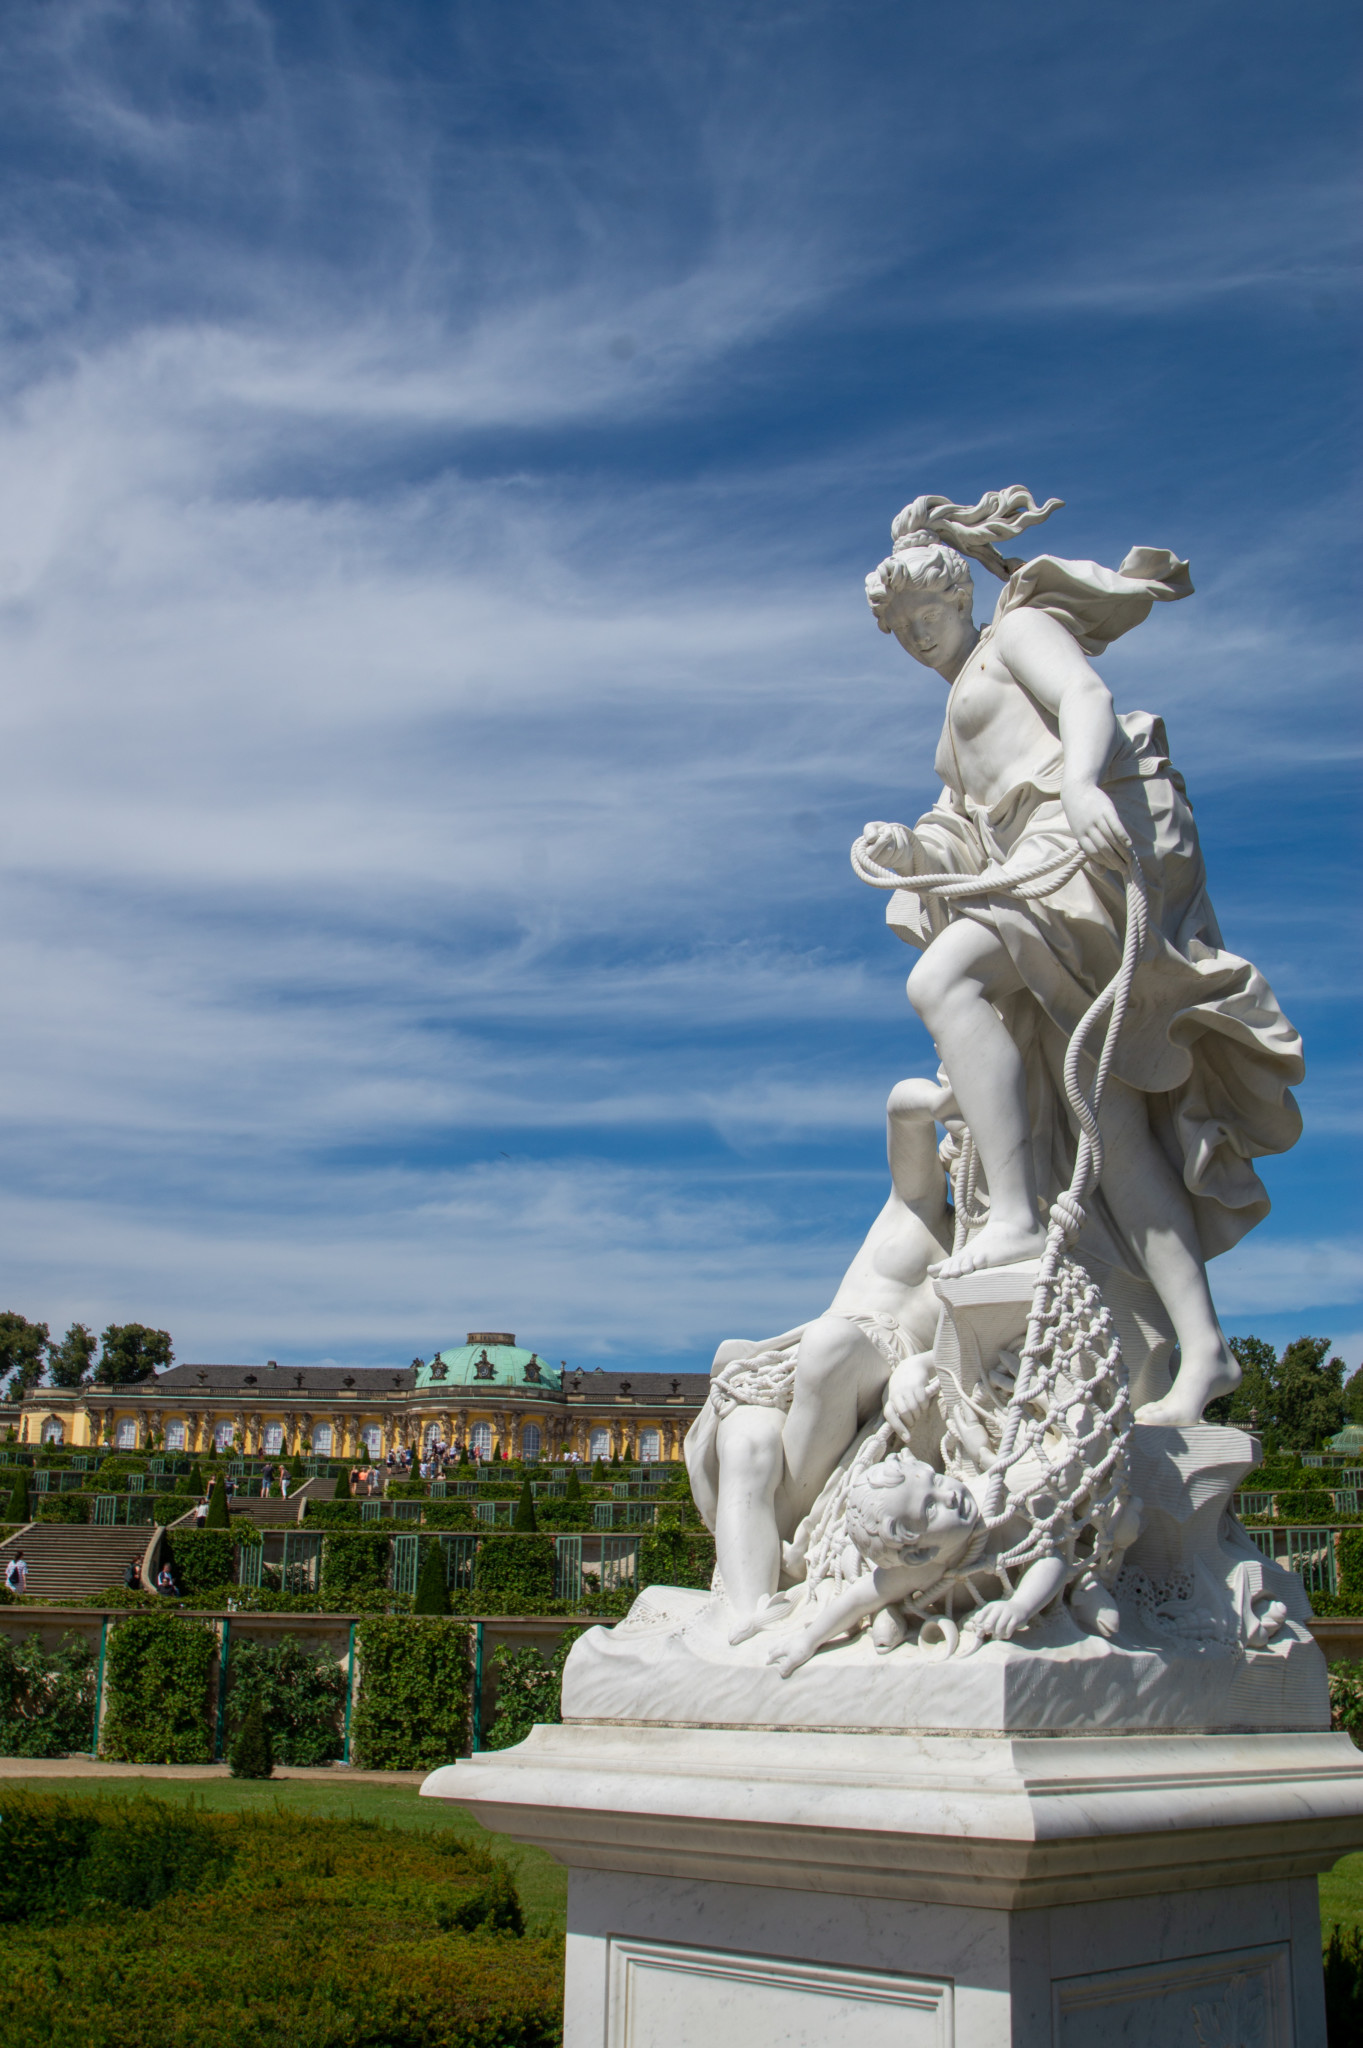 Statue im Park Sanssouci